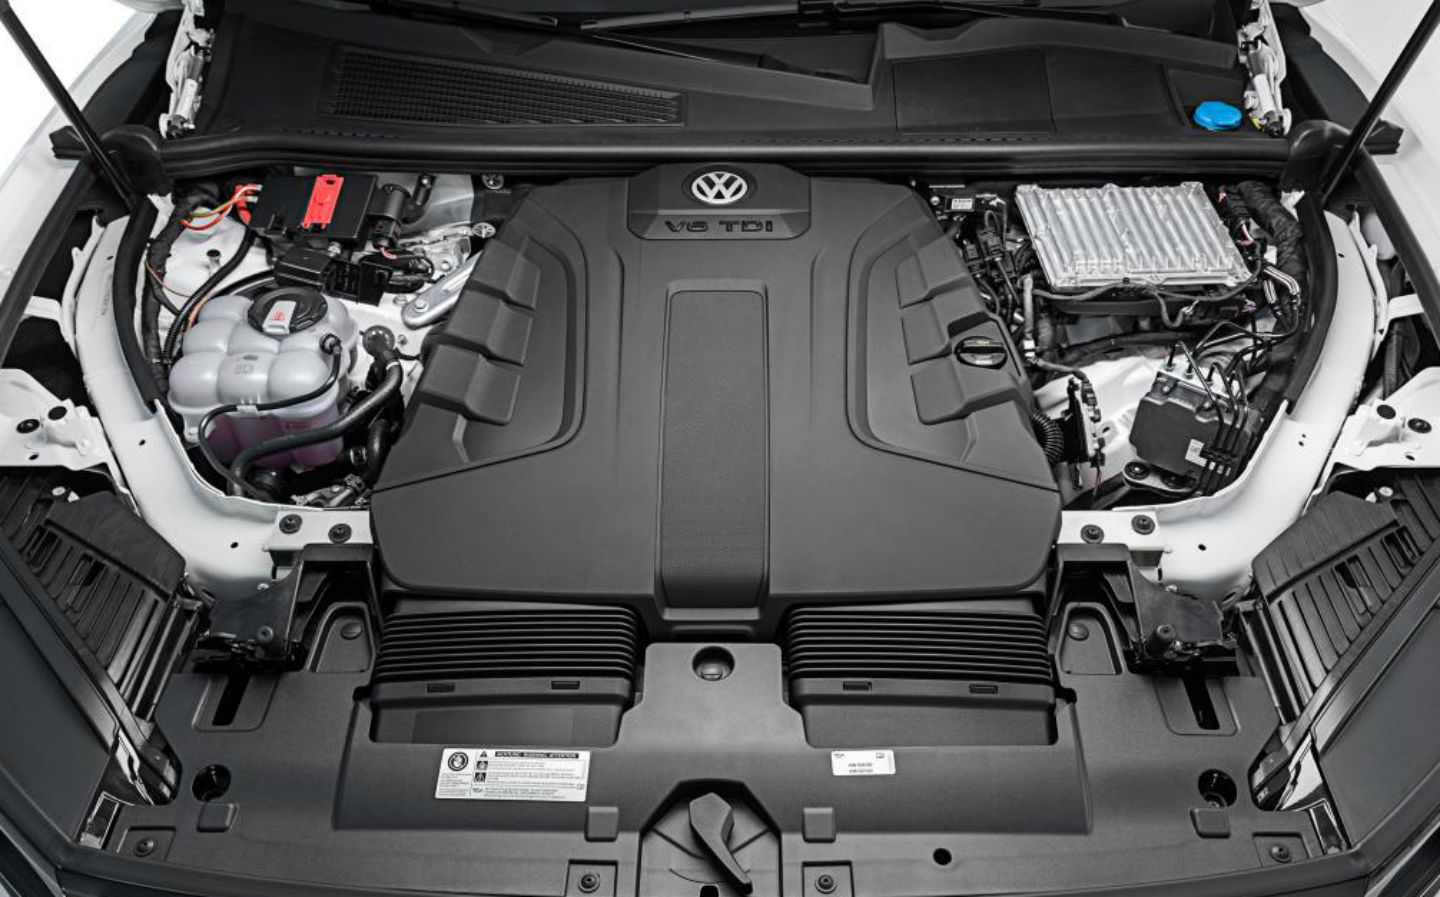 2018-VW-Touareg-engine-range1